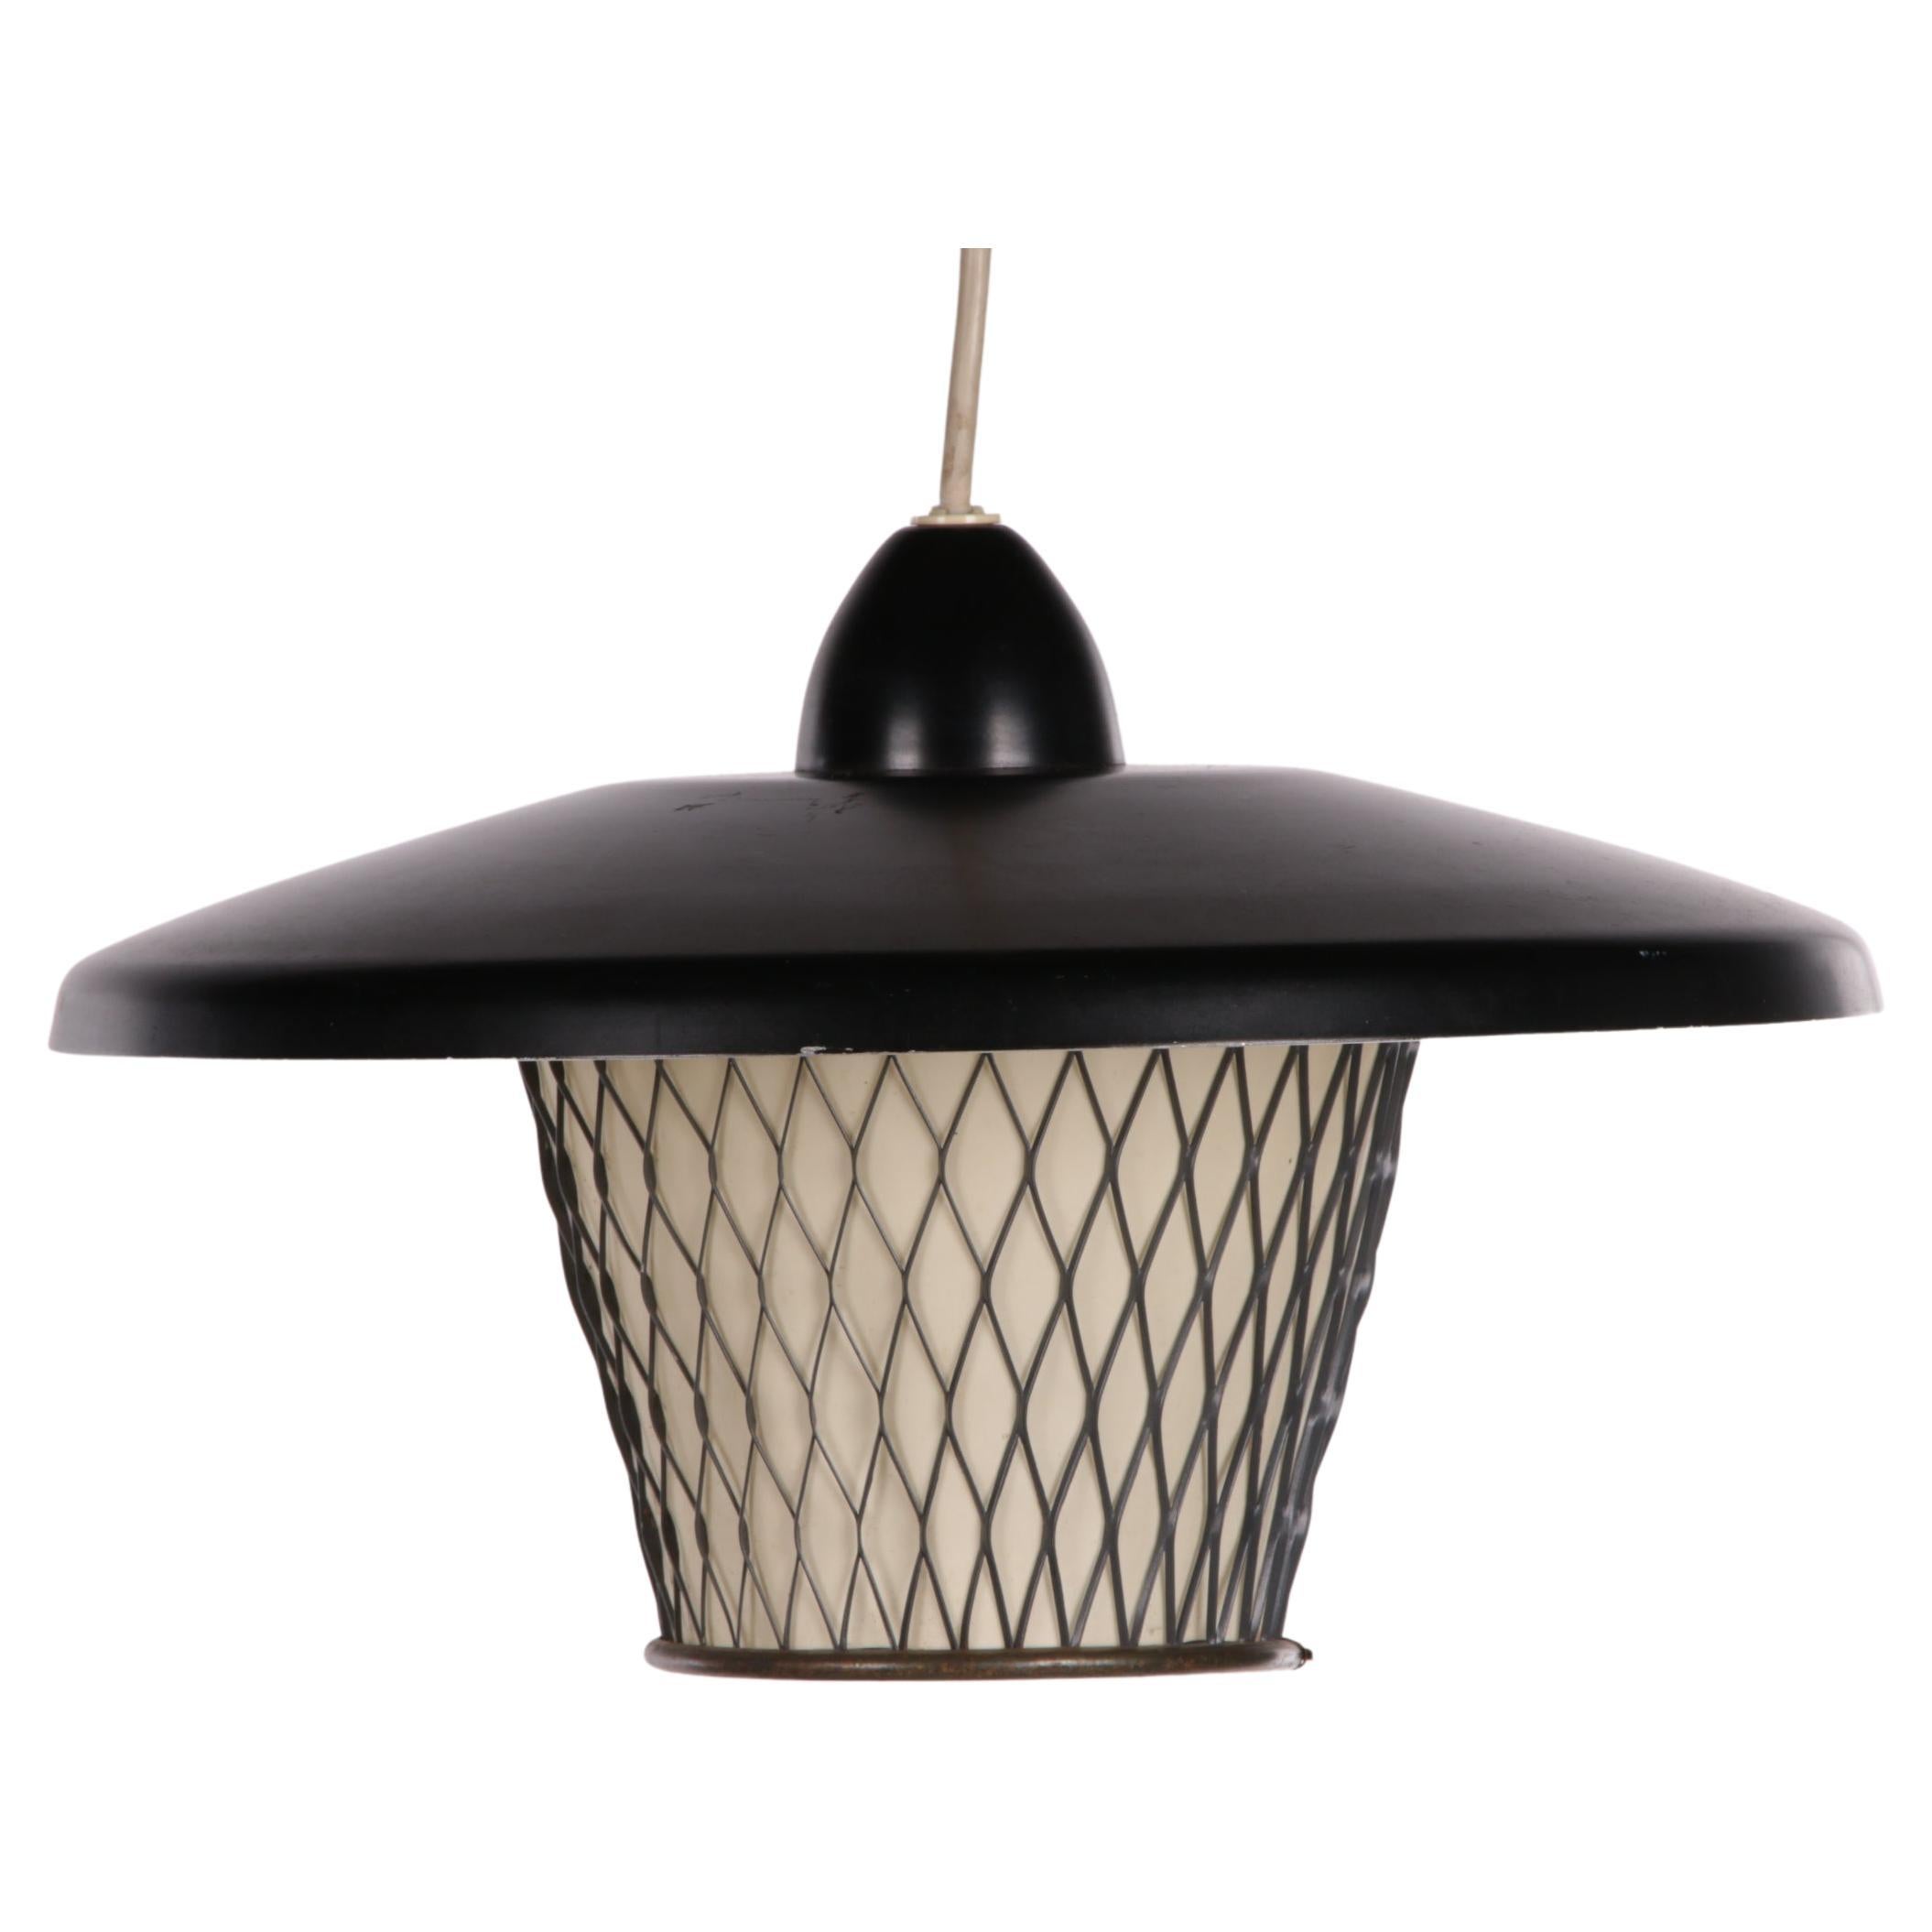 Lampe suspendue vintage provenant de Scandinavie, fabriquée dans les années 1960